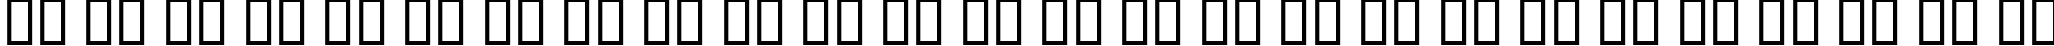 Пример написания английского алфавита шрифтом B Titr Bold